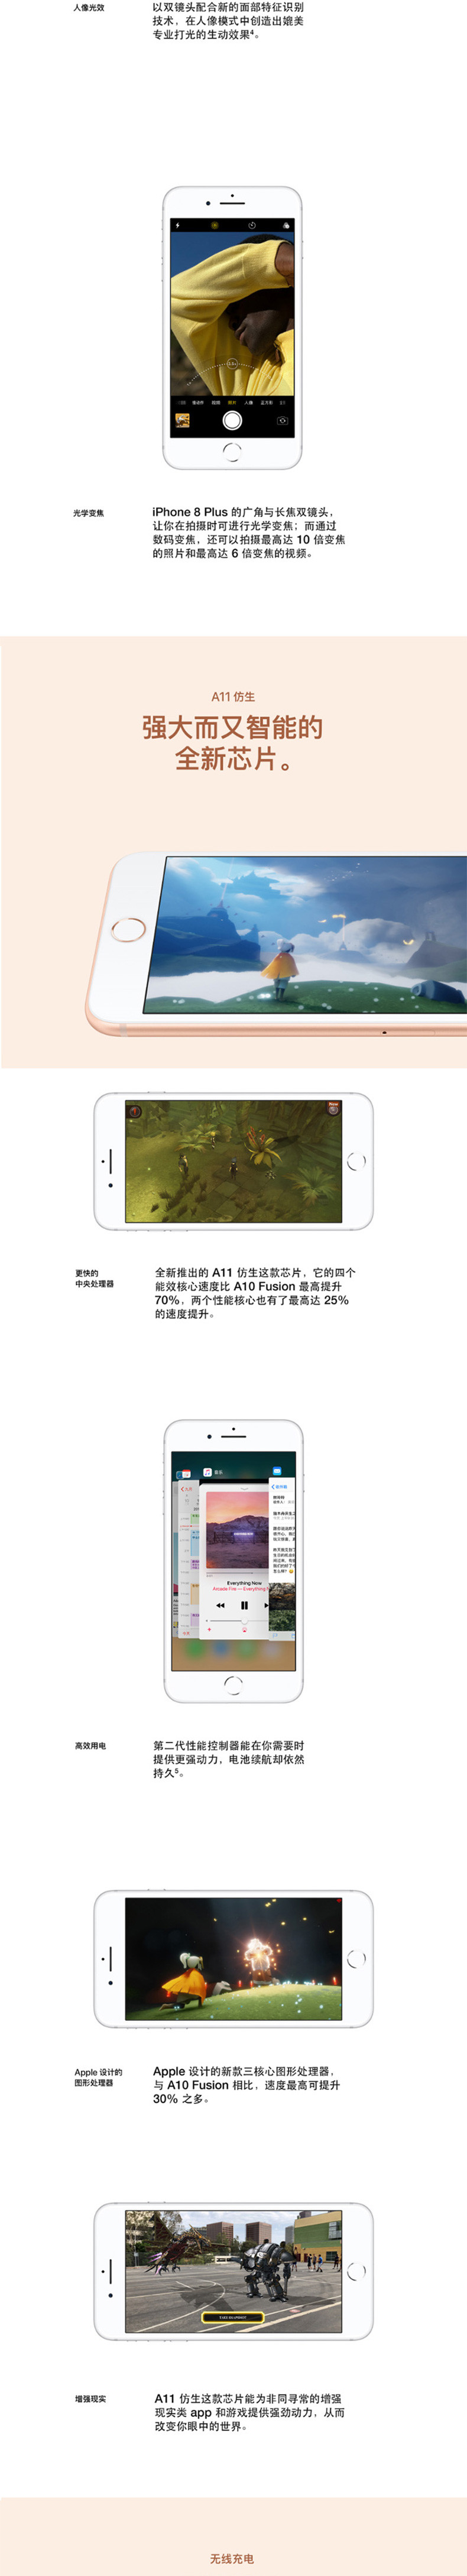 苹果 /APPLE iPhone 8 plus(A1864) 64GB 金色/银色/灰色/红色全网通